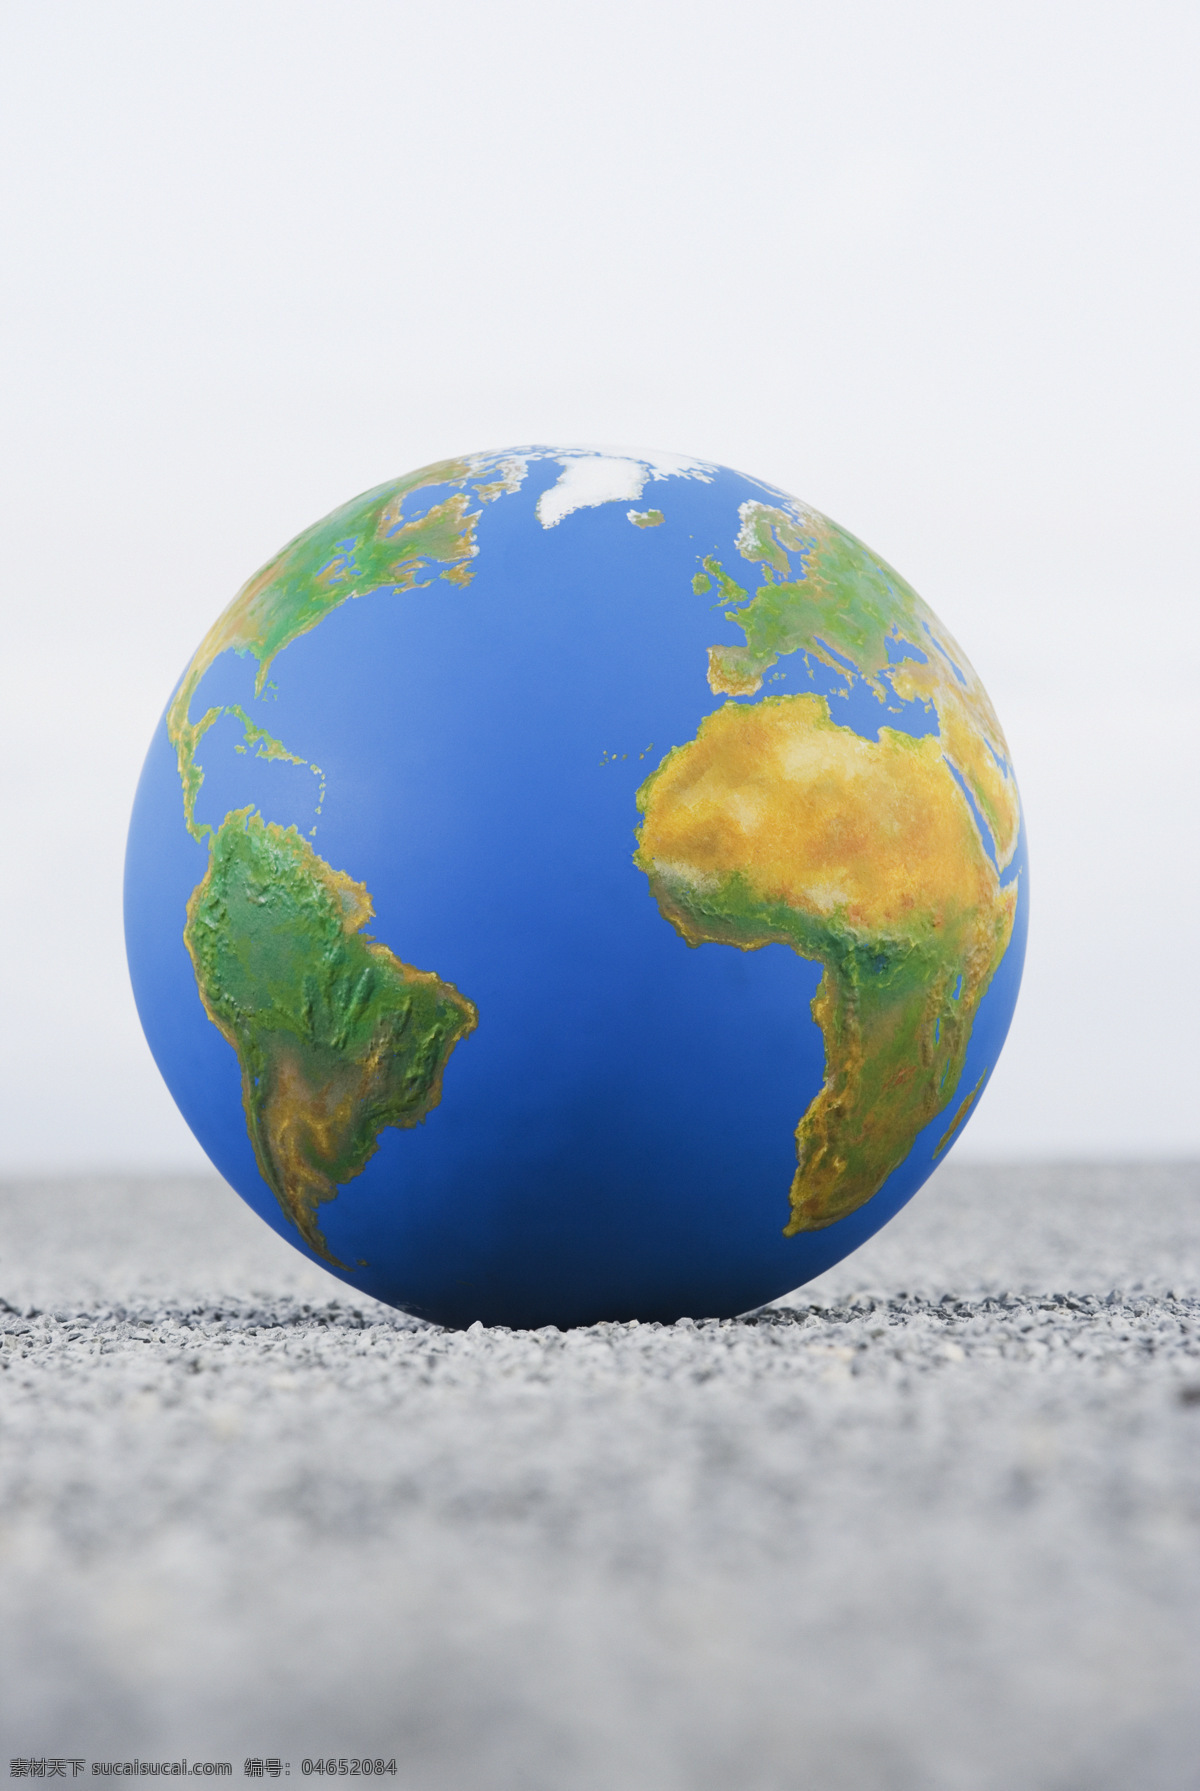 蓝色 地球 特写 商务 金融贸易 全球化 世界地图 高清图片 创意设计 创意摄影 广告设计素材 影子 地球素材 商业素材 蓝色地球 地球特写 地球图片 环境家居